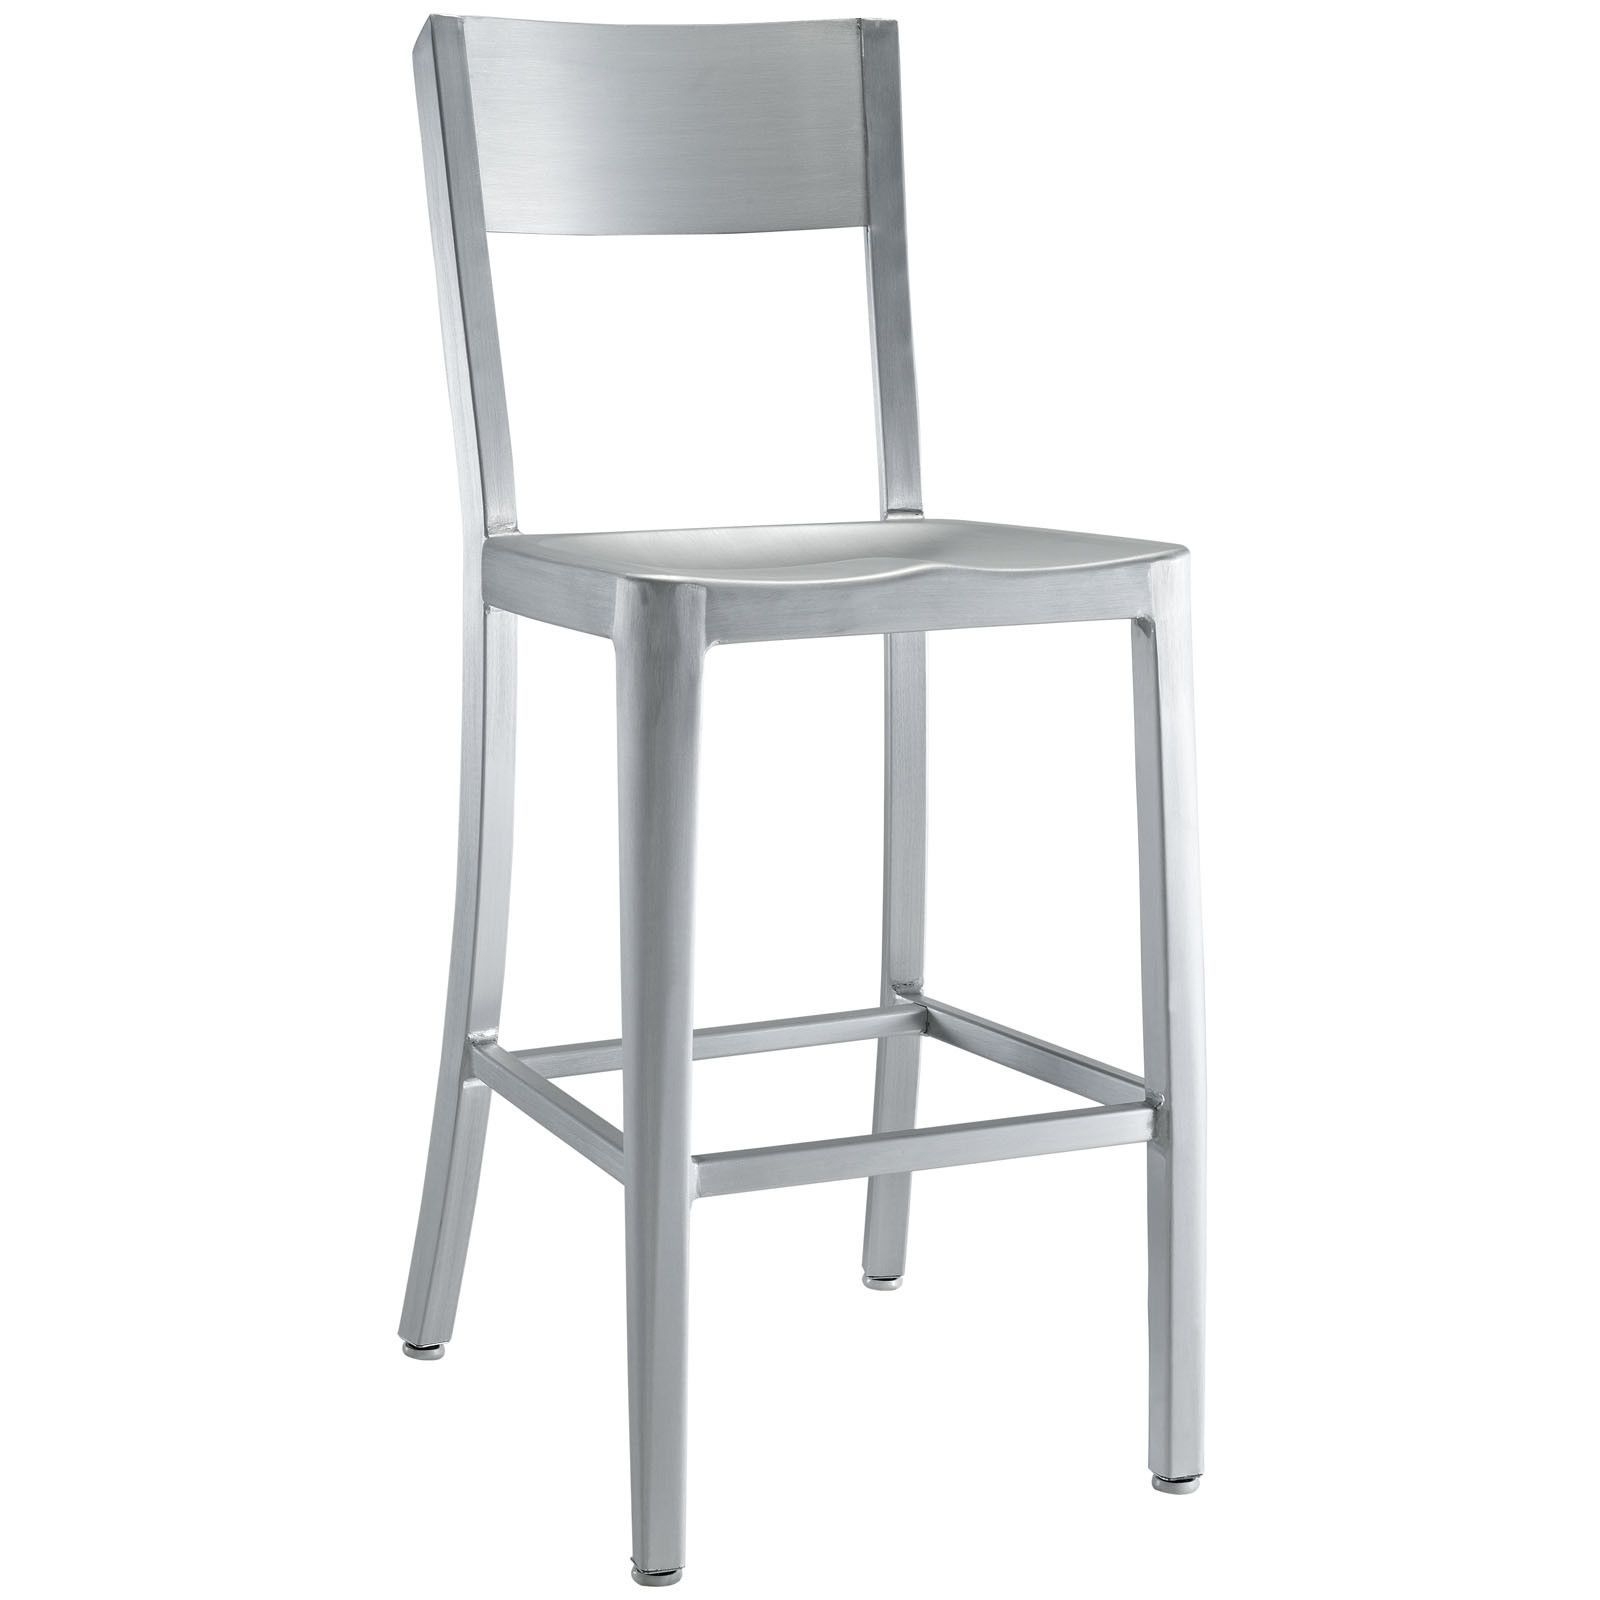 Emeco counter stool 15